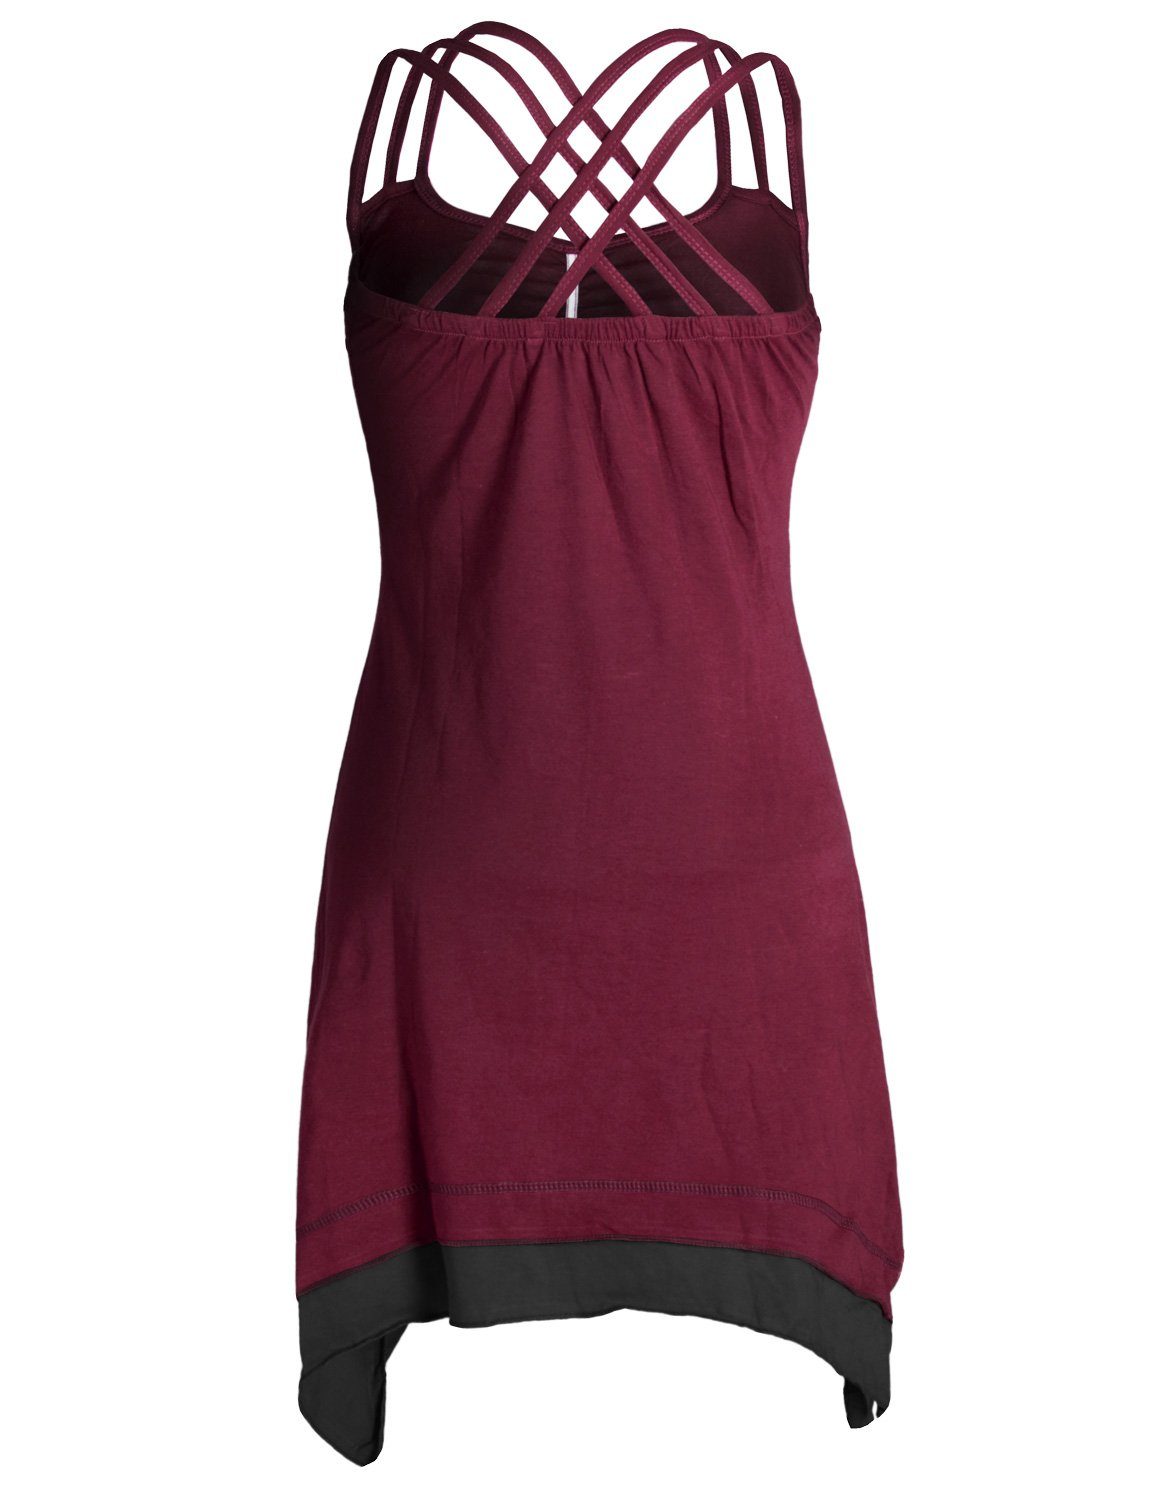 Vishes Sommerkleid Lagenlook Trägerkleid dunkelrot Zipfeln Hippie, Organic mit Cotton Style Boho Elfen